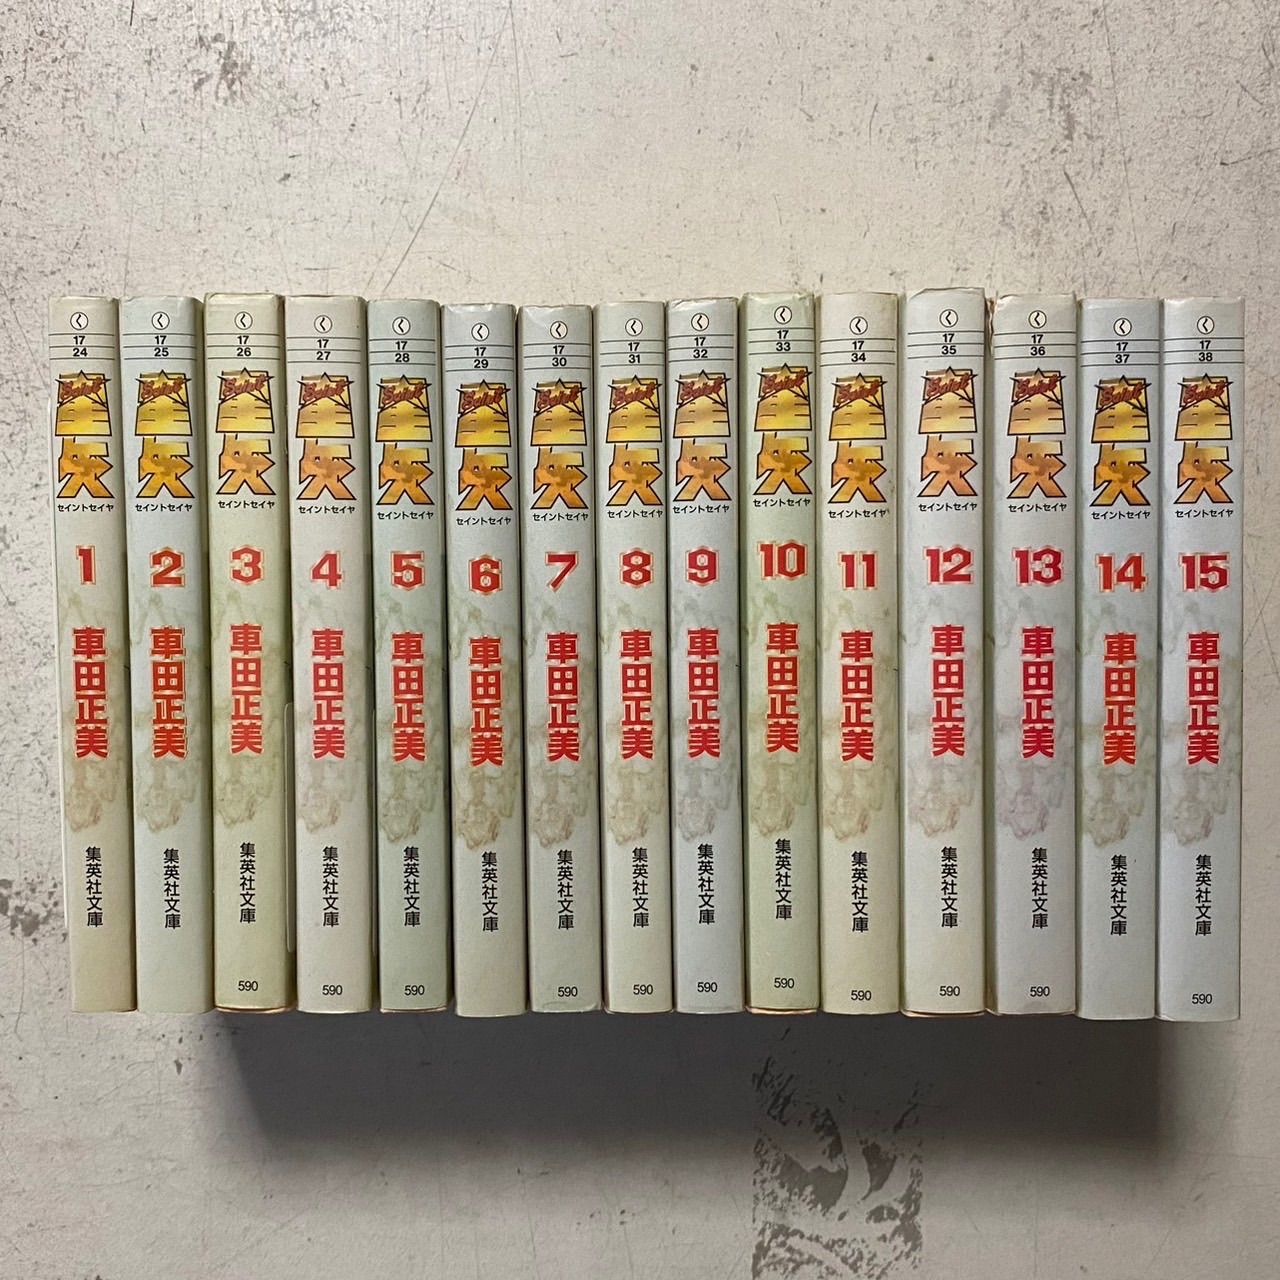 聖闘士星矢 文庫版 全15巻 全巻セット - 全巻セット